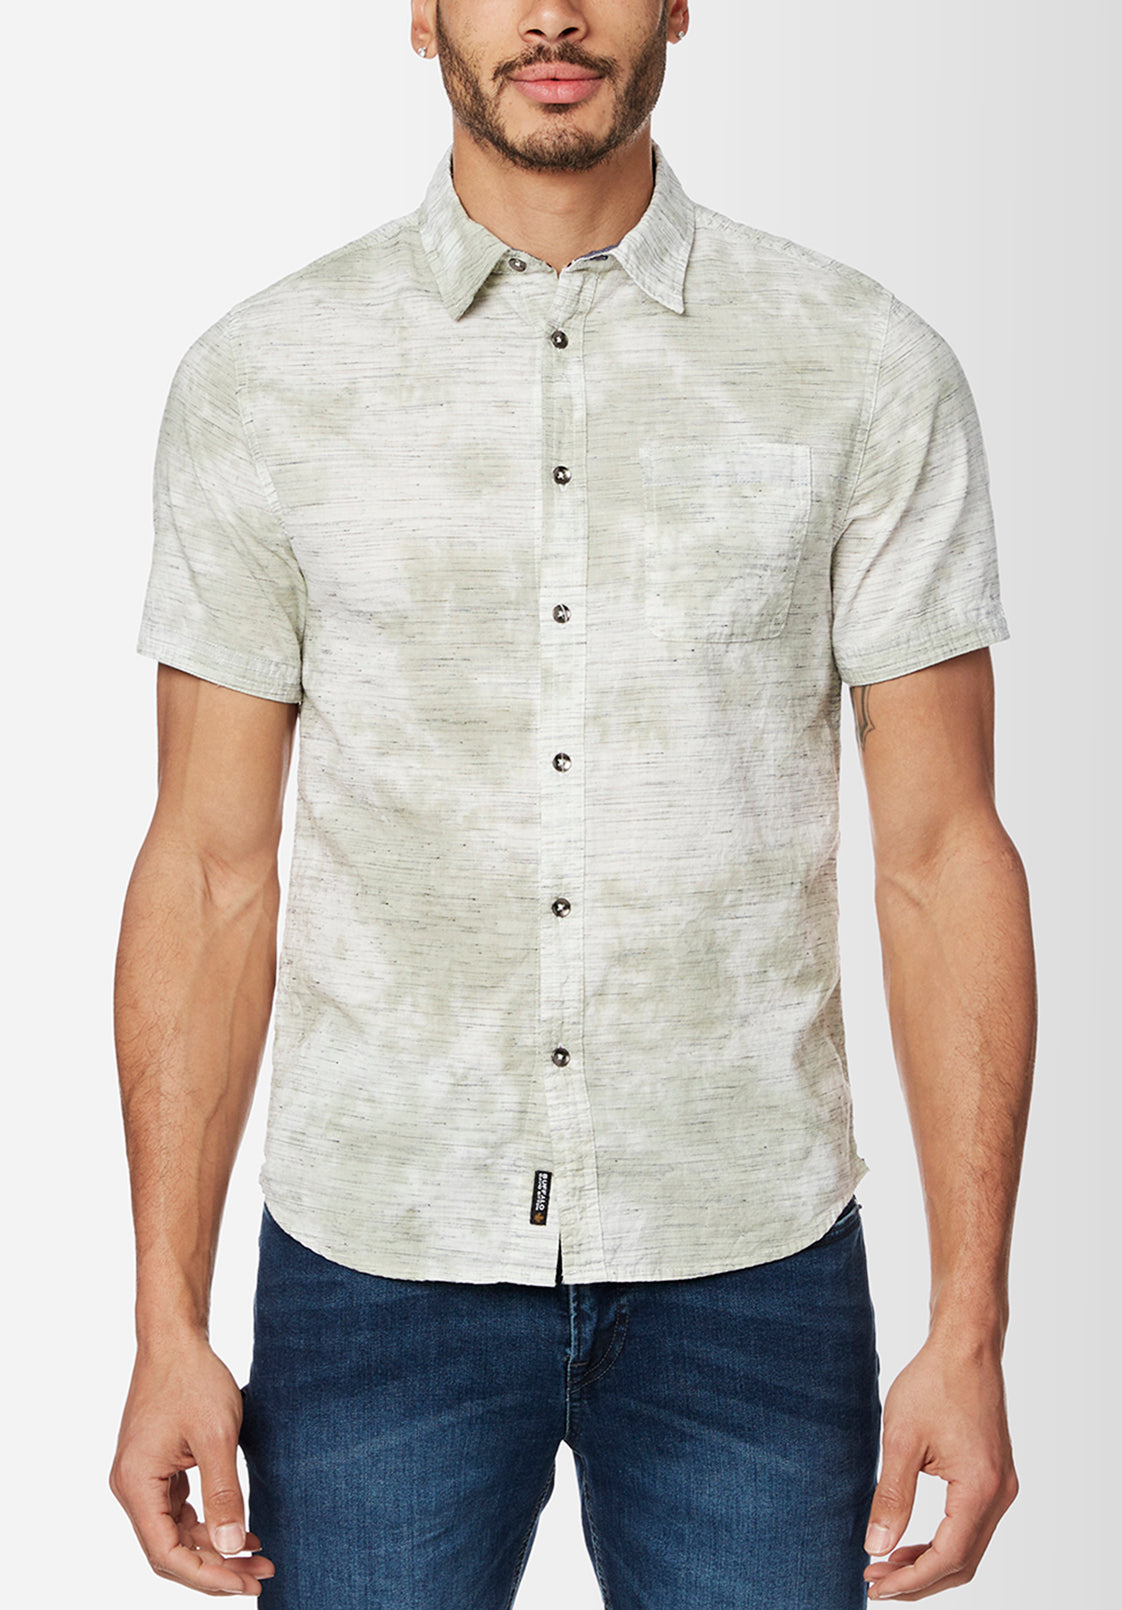 Sotar Tie Dye Button Shirt - BM23919